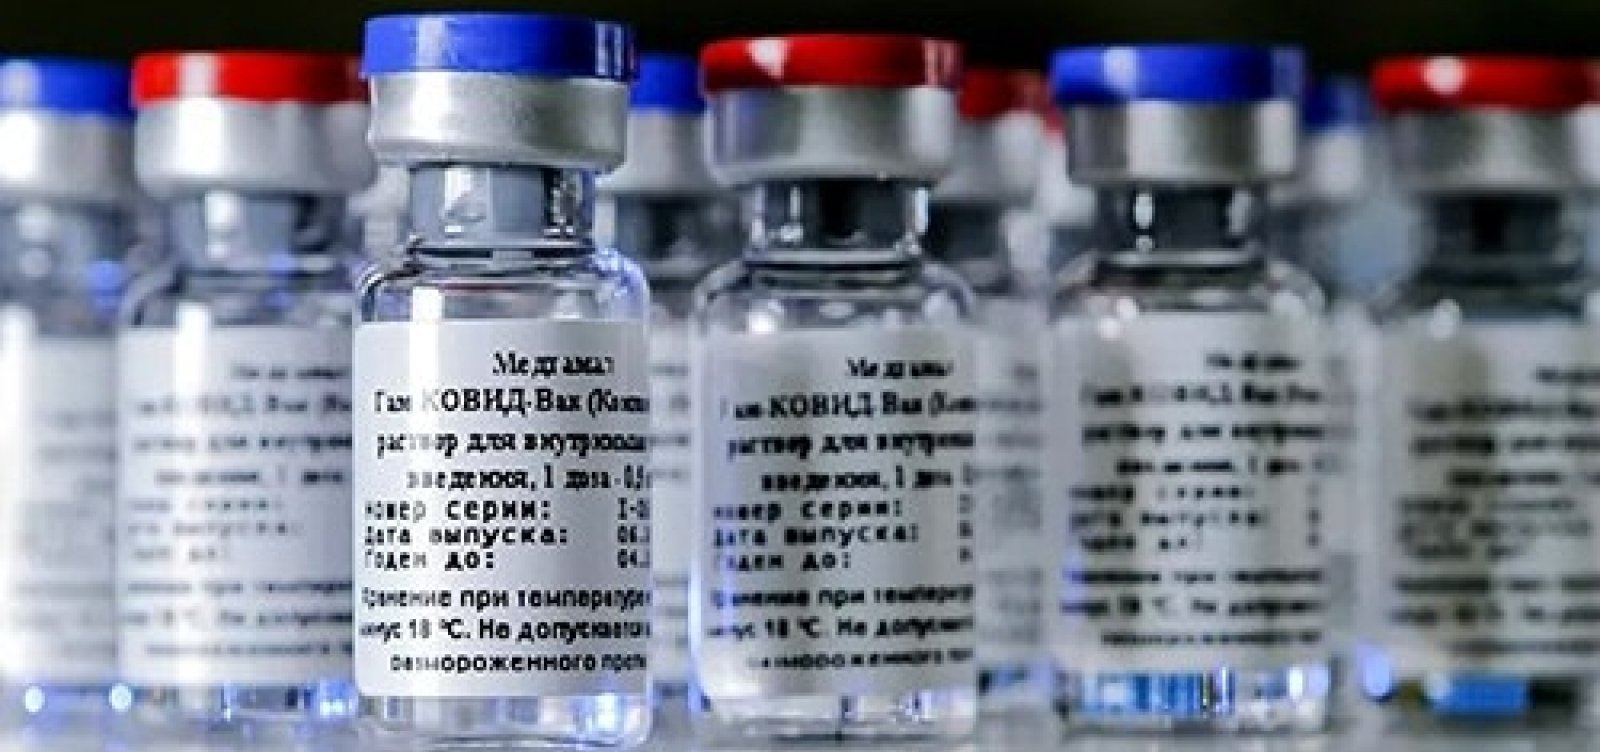  Anvisa aprova importação das vacinas Covaxin e Sputnik V, mas impõe restrições